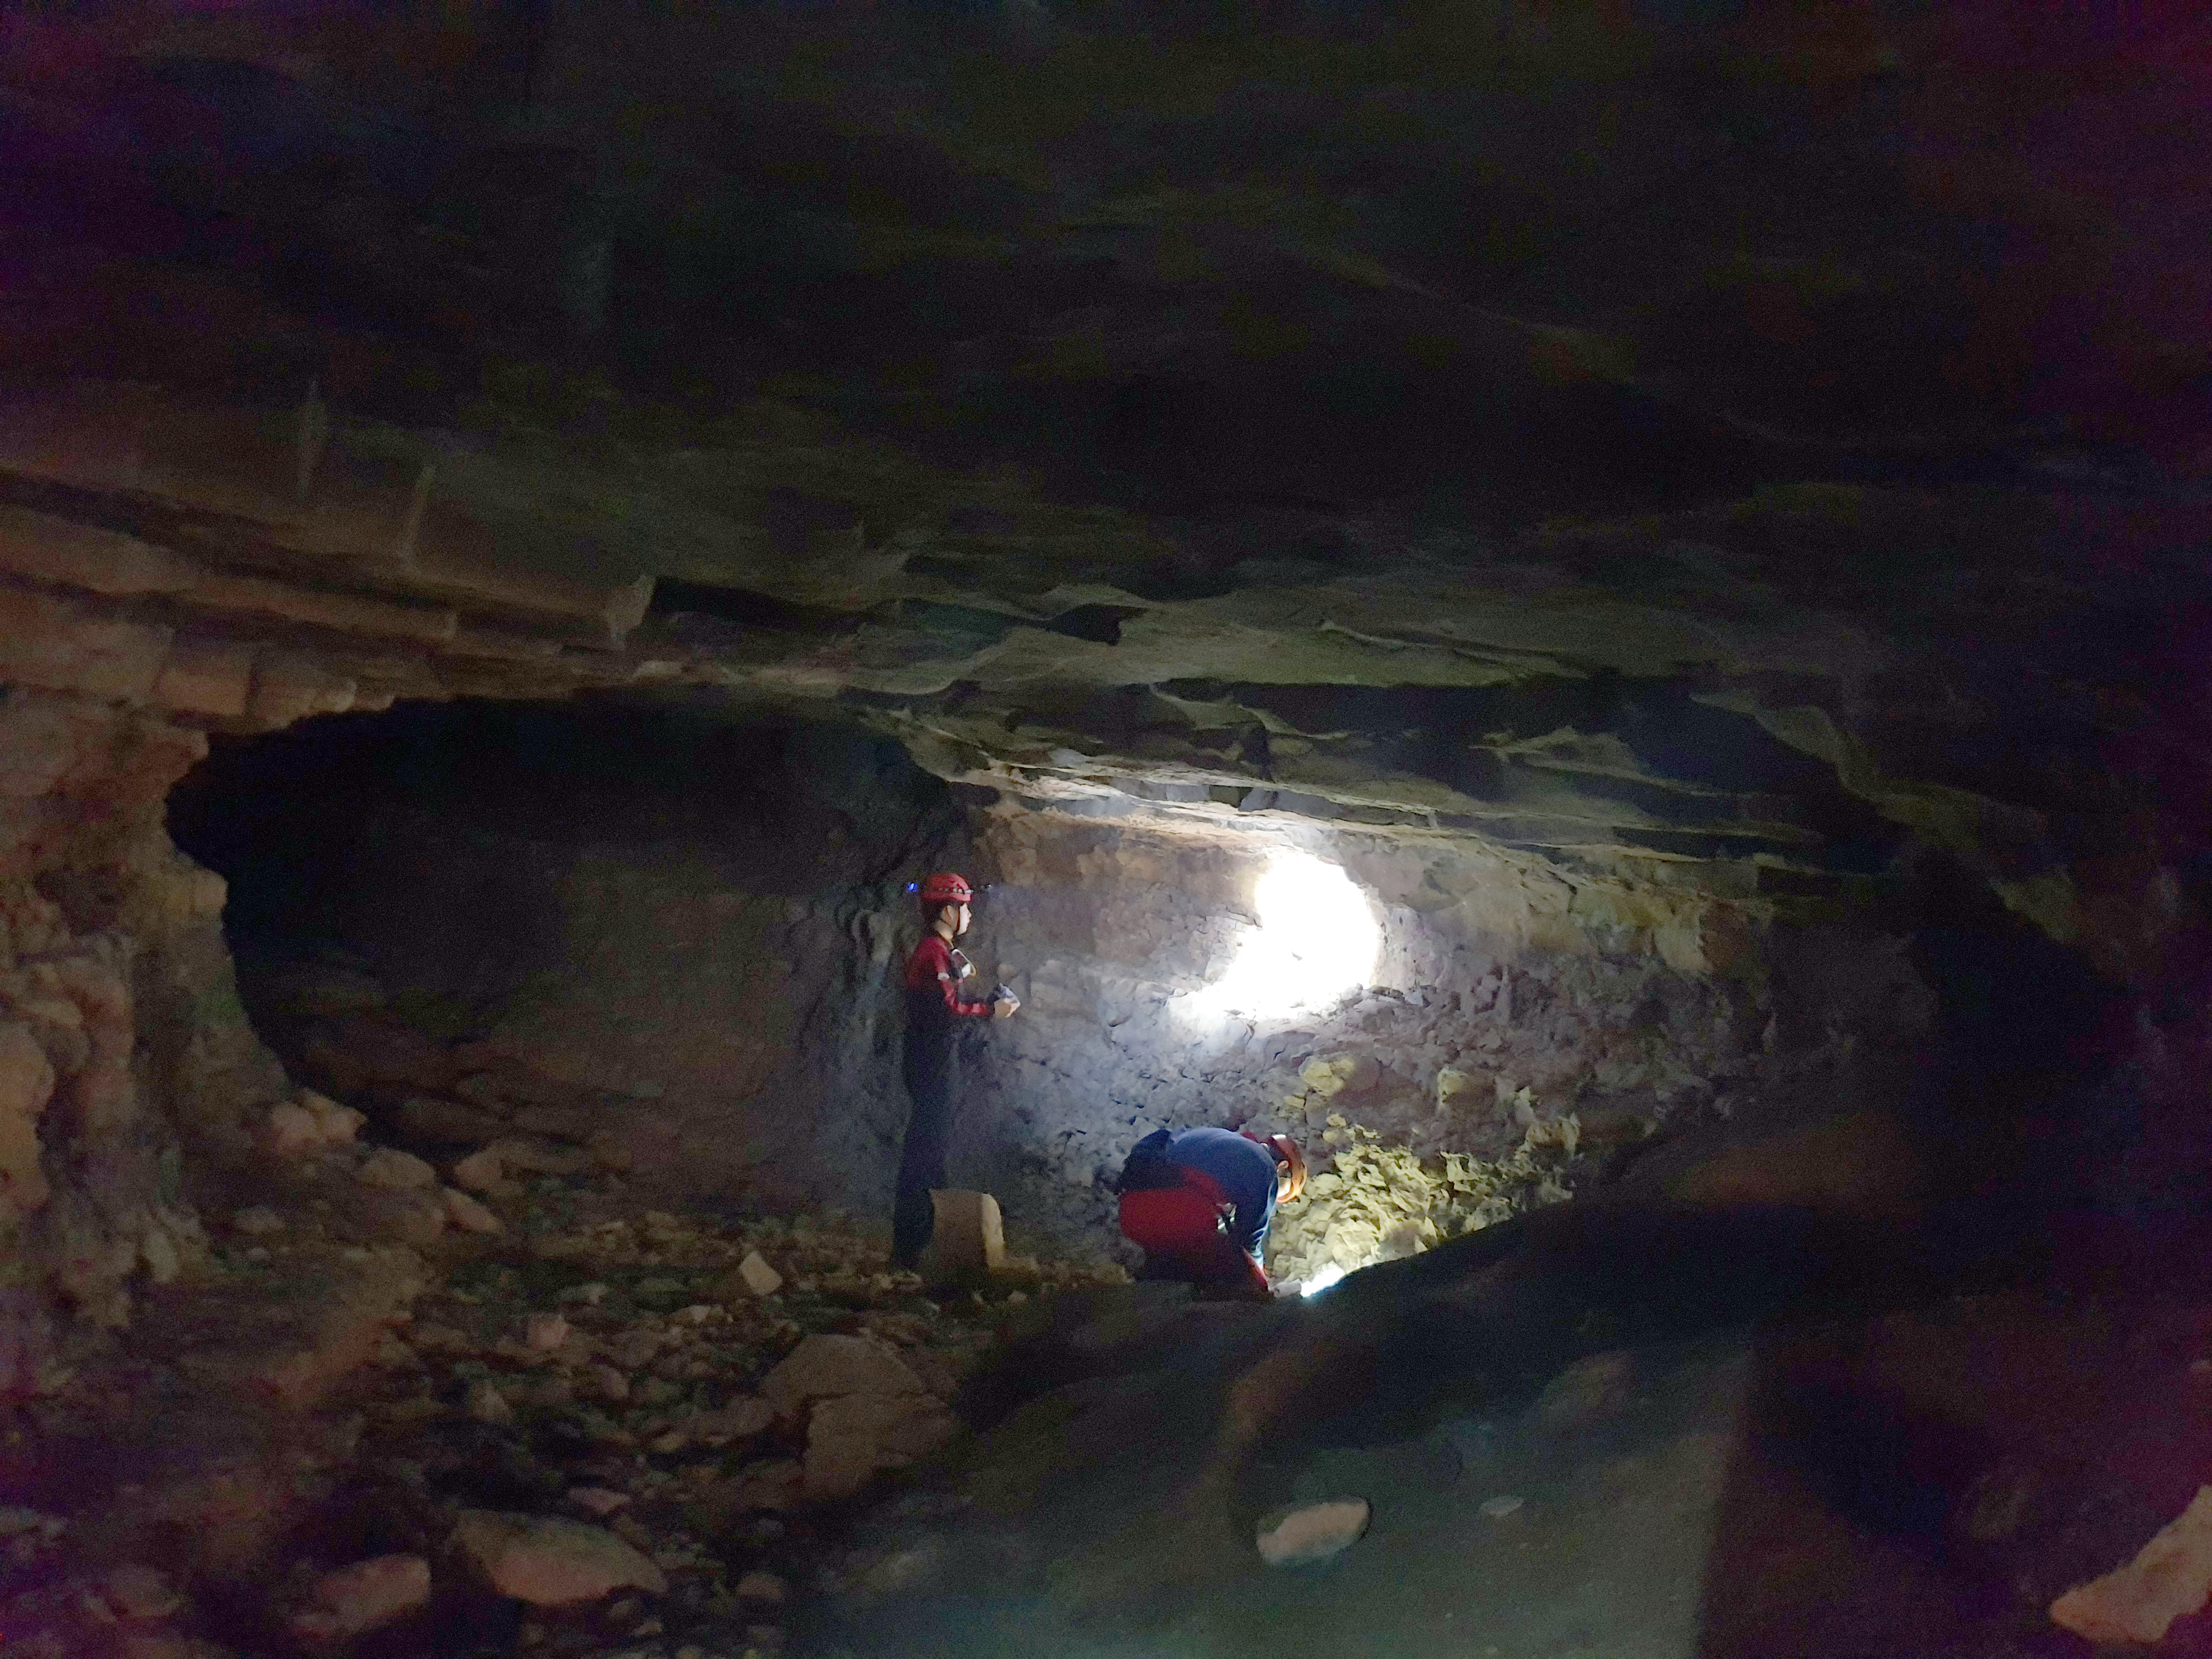 채집지인 동굴 내부 (국립생물자원관)